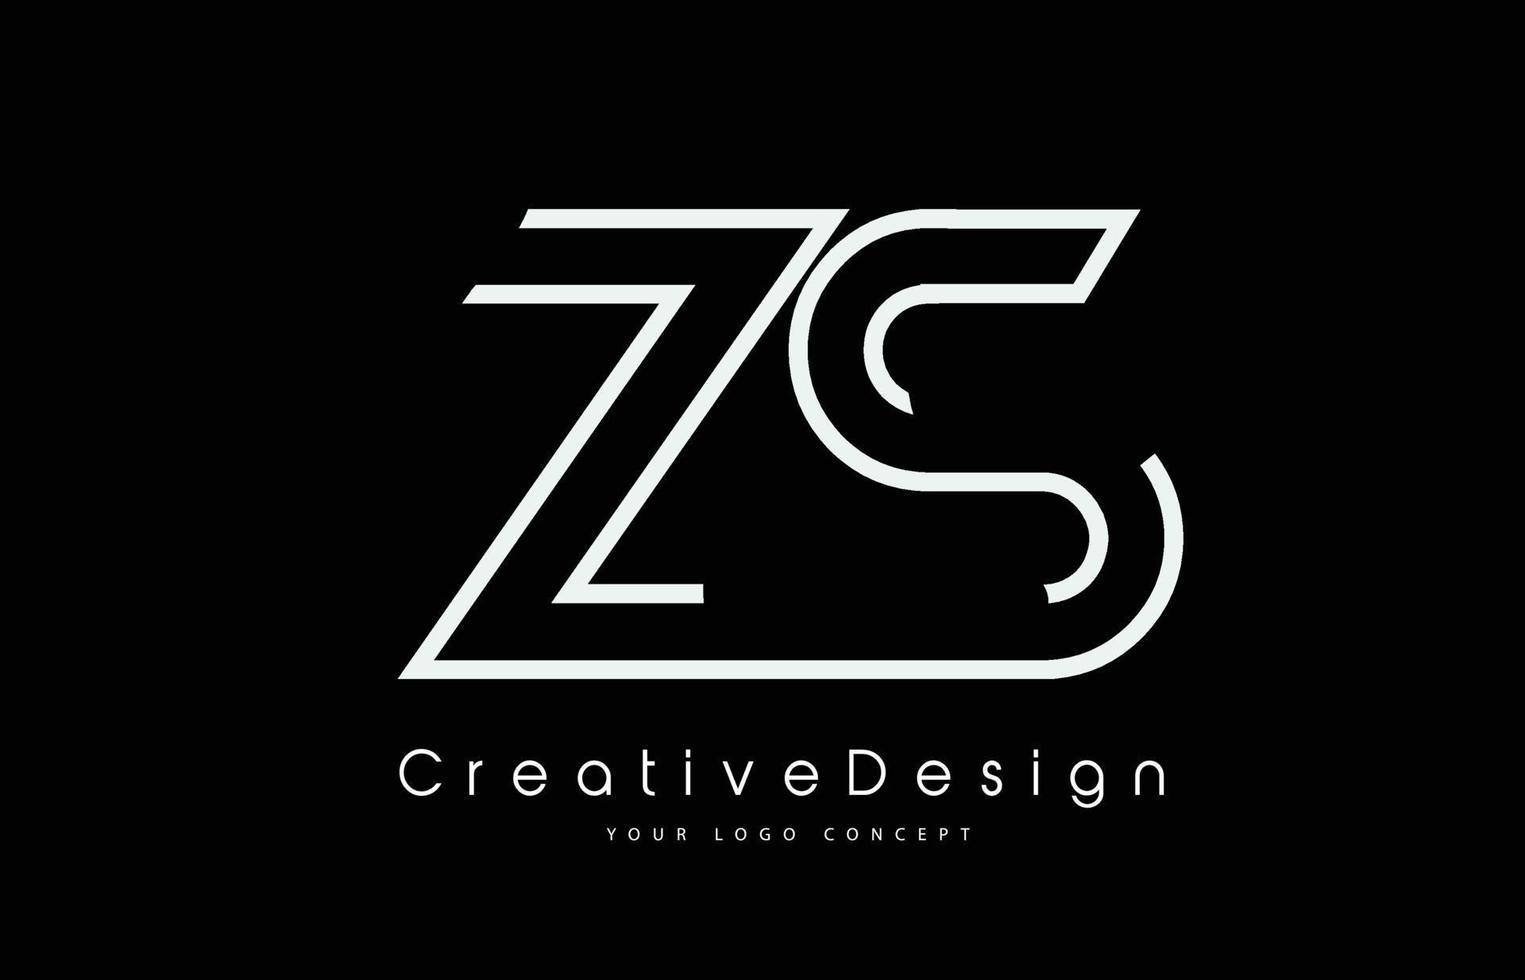 Diseño del logotipo de la letra zs zs en colores blancos. vector